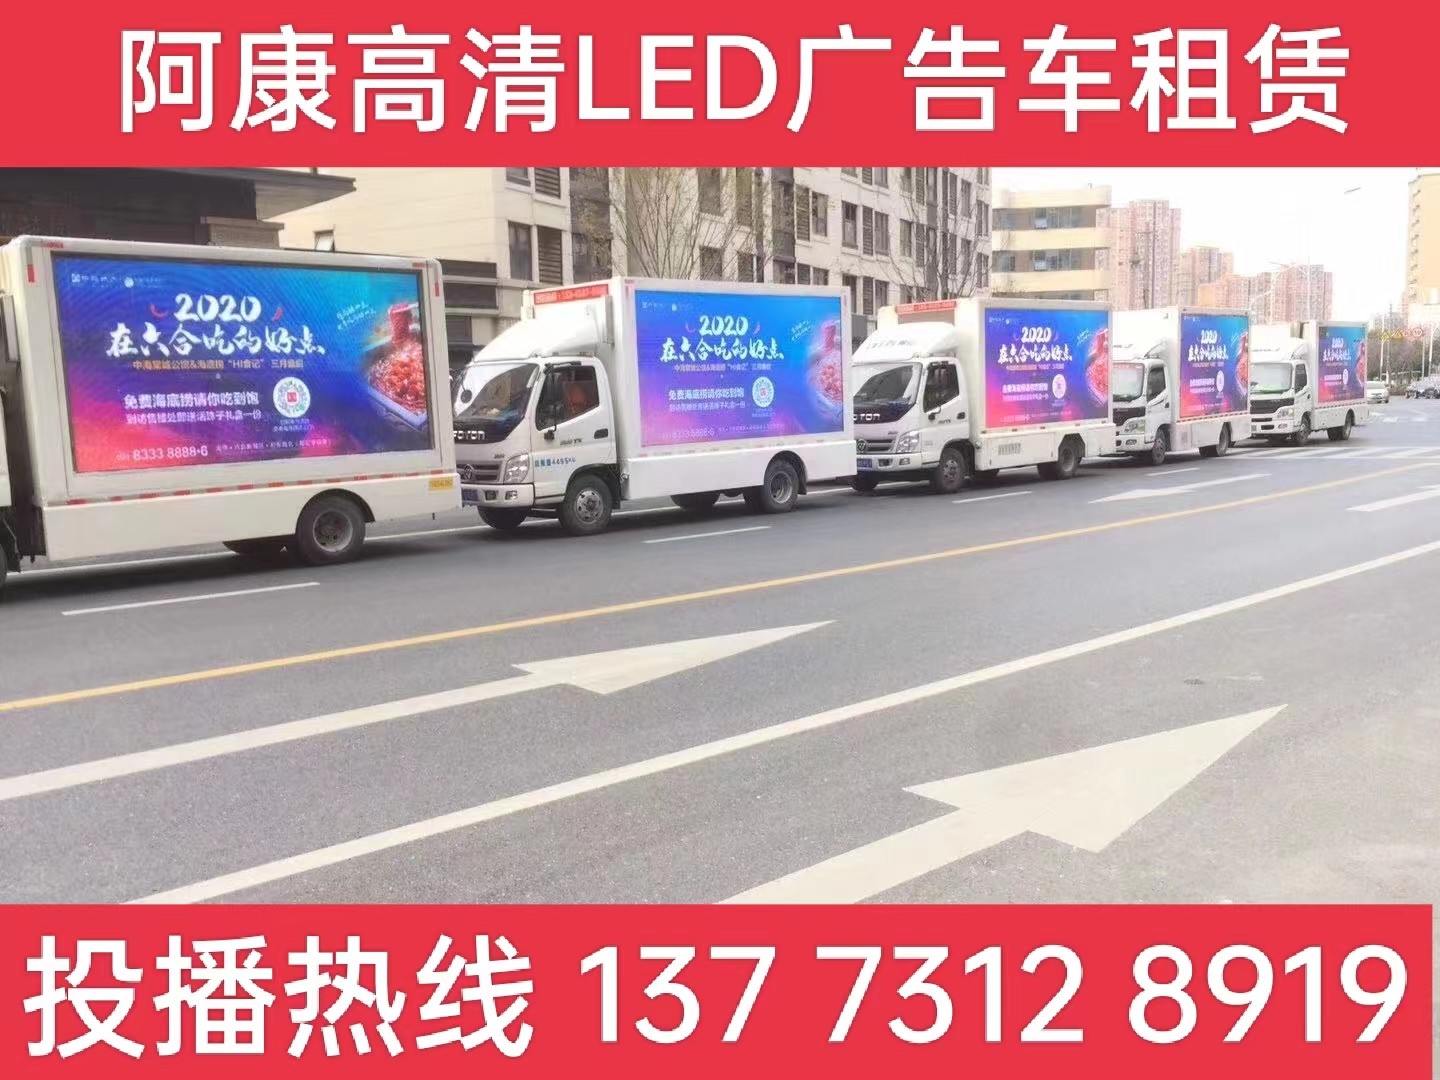 雨花台区宣传车出租-海底捞LED广告